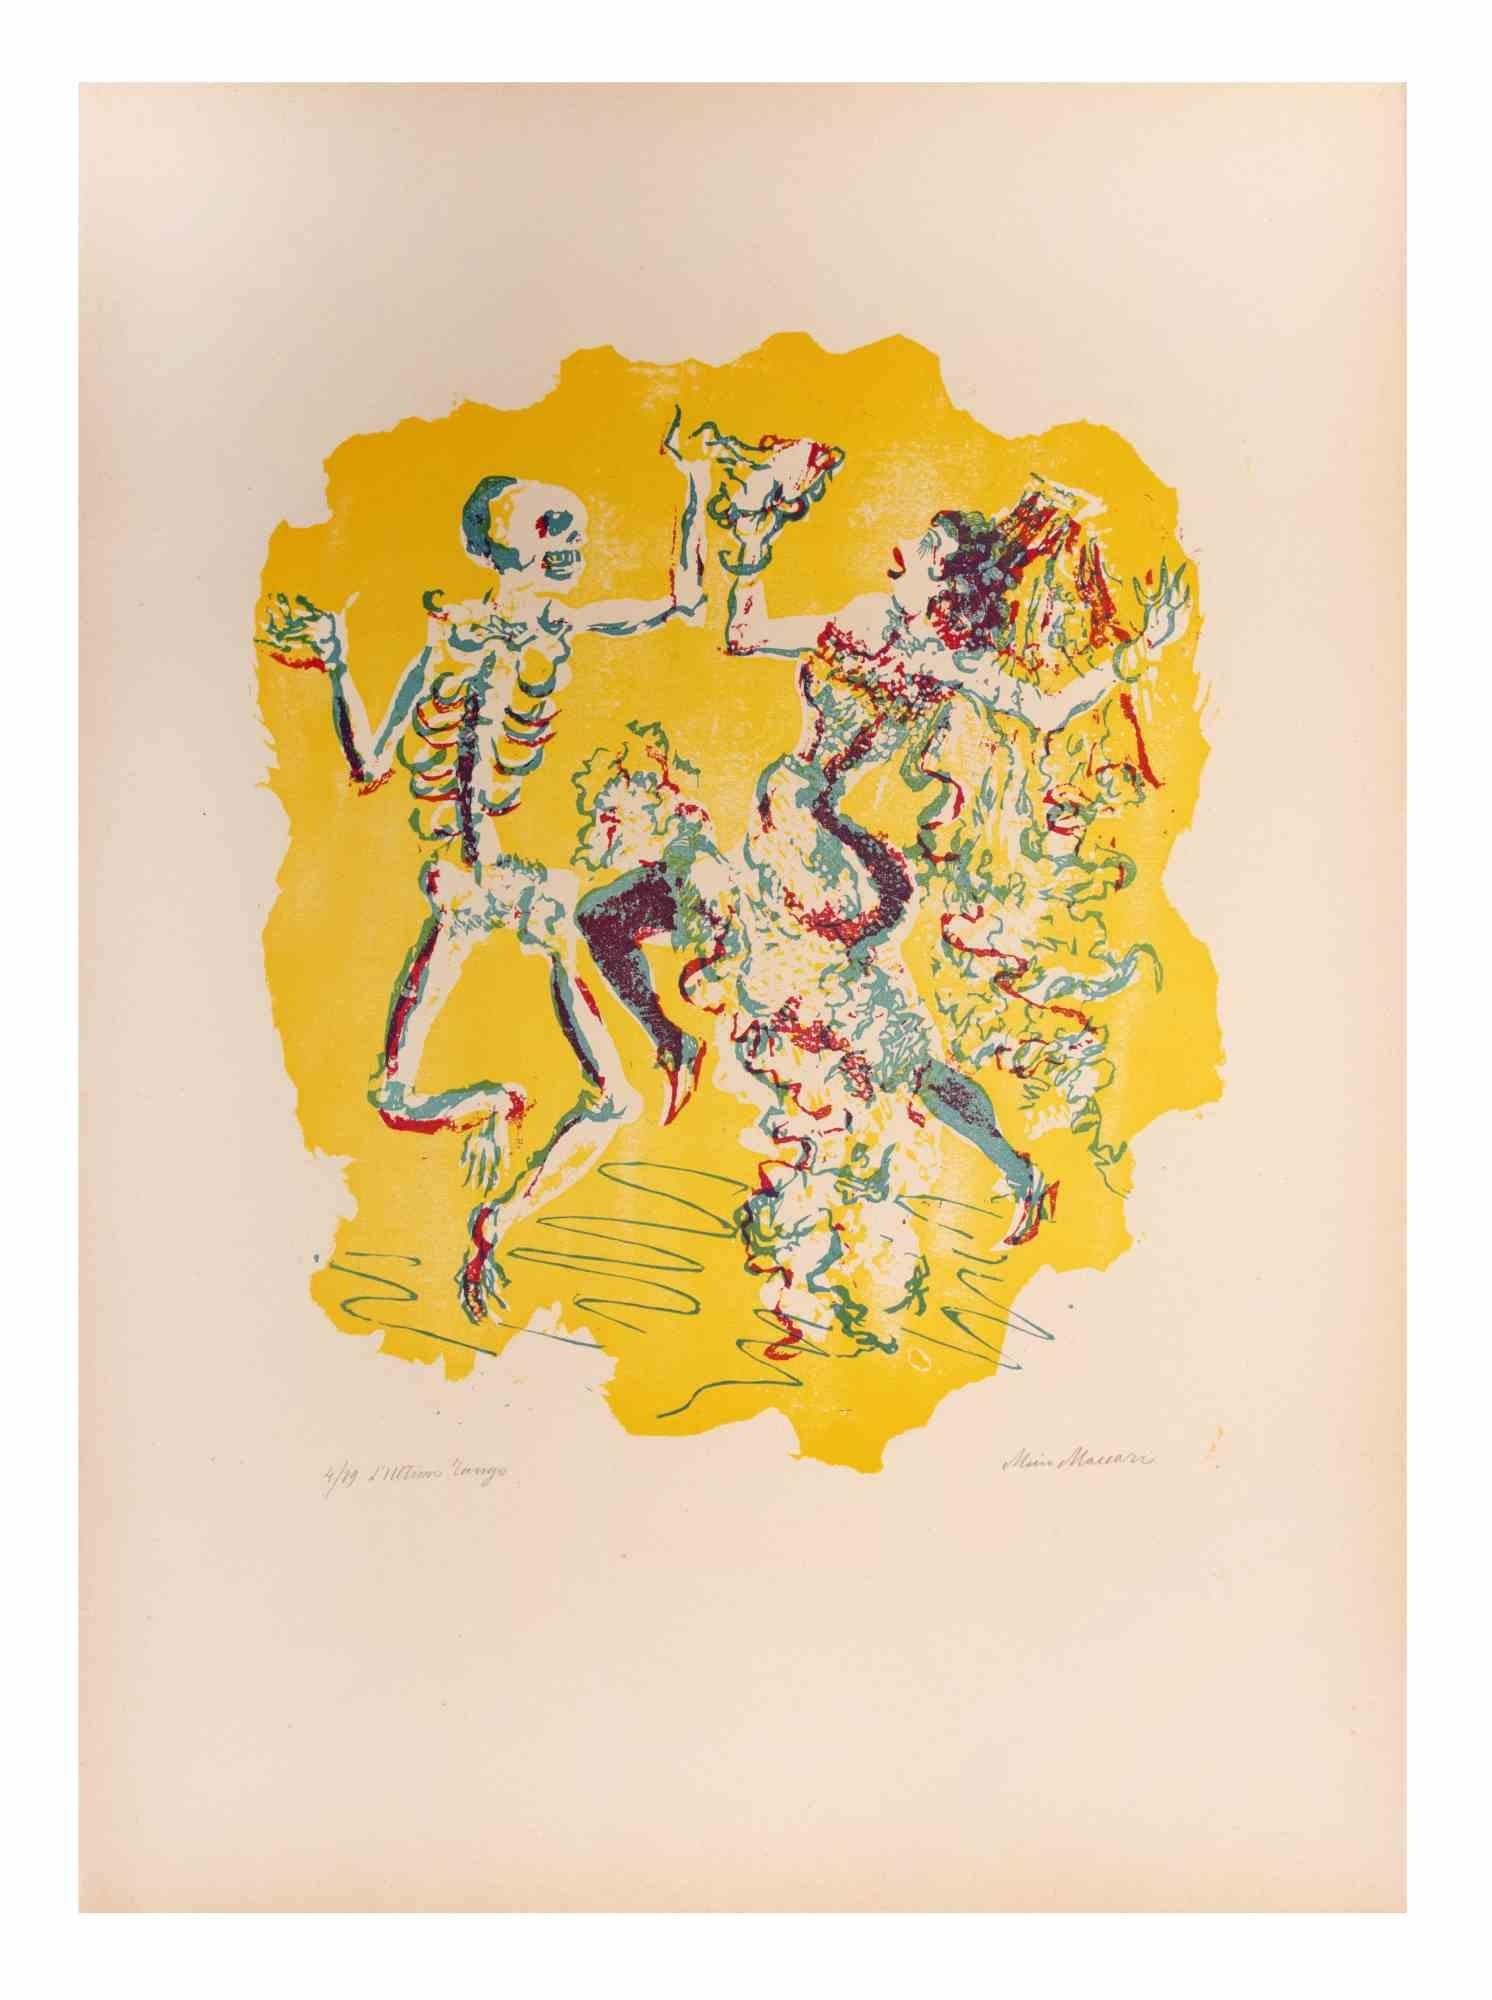 Le dernier tango est une œuvre d'art réalisée par Mino Maccari (1924-1989) au milieu du 20e siècle.

Gravure sur bois colorée sur papier. Signé à la main dans la partie inférieure, numéroté 4/89 exemplaires et titré dans la marge gauche.

Bonnes